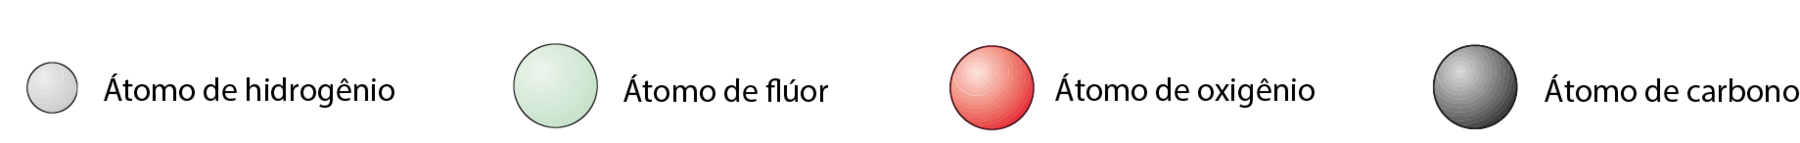 Ilustração. Esfera branca = átomo de hidrogênio. Esfera verde = átomo de flúor. Esfera vermelha = átomo de oxigênio. Esfera cinza = átomo de carbono.